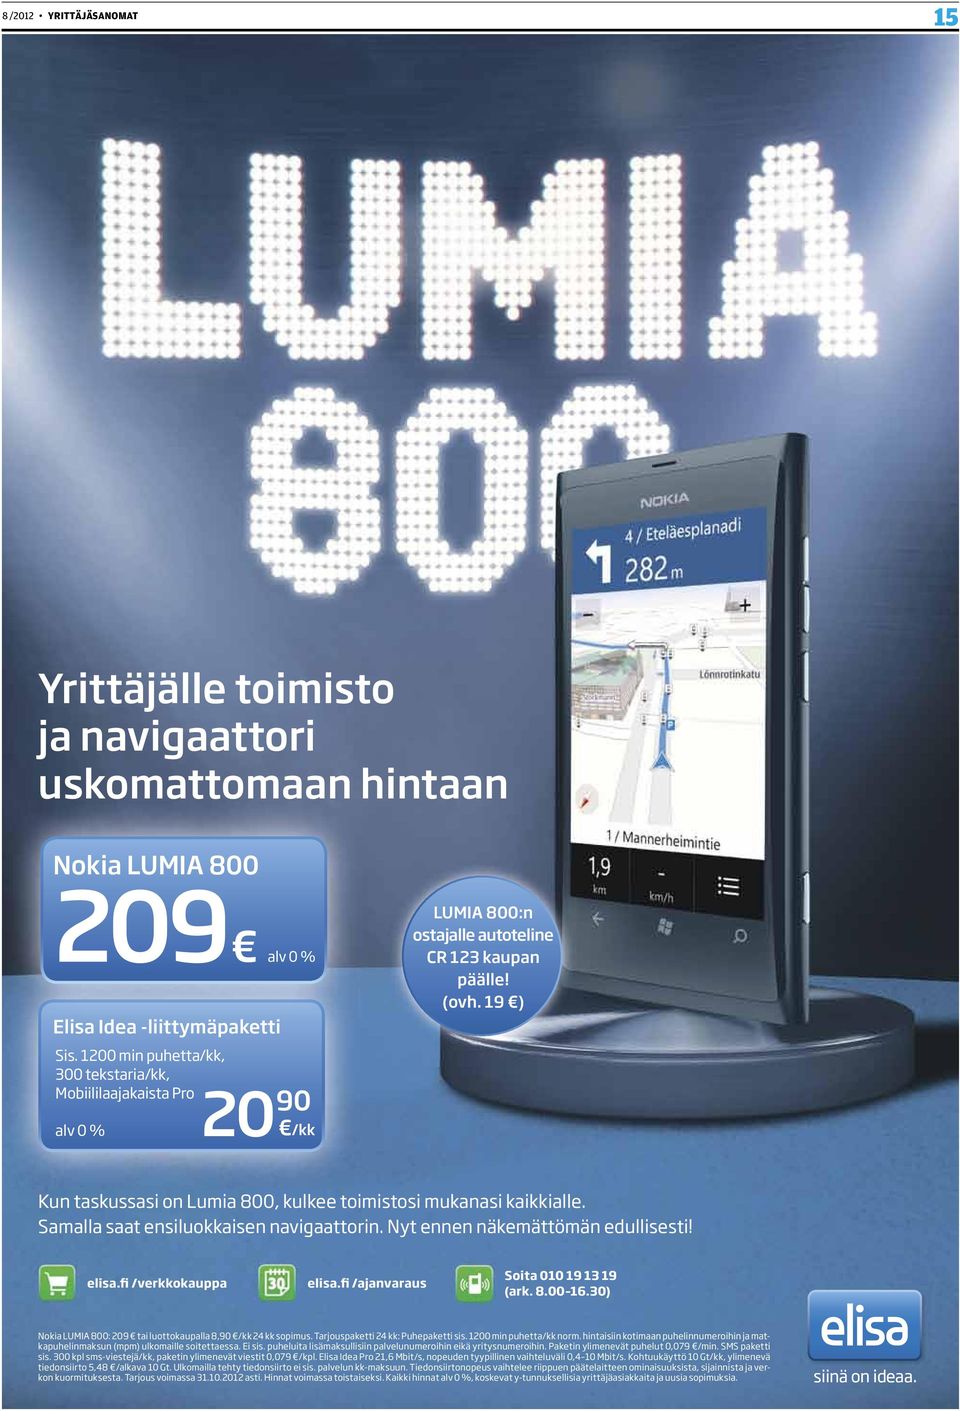 19 ) Kun taskussasi on Lumia 800, kulkee toimistosi mukanasi kaikkialle. Samalla saat ensiluokkaisen navigaattorin. Nyt ennen näkemättömän edullisesti! elisa.fi /verkkokauppa elisa.